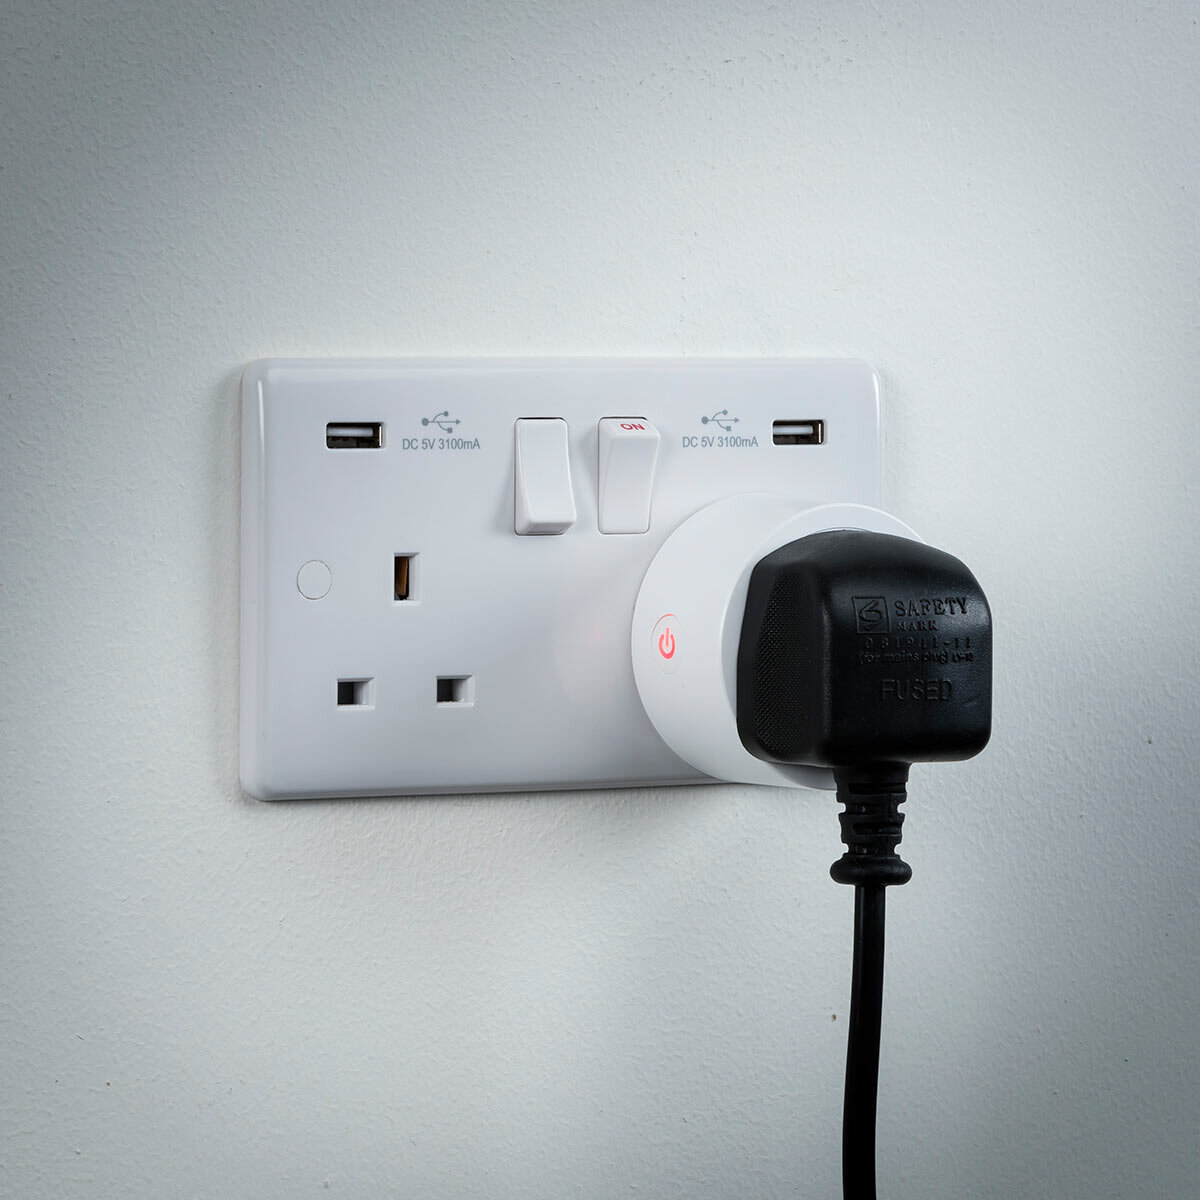 Smart Plug | What does a Smart Plug Do